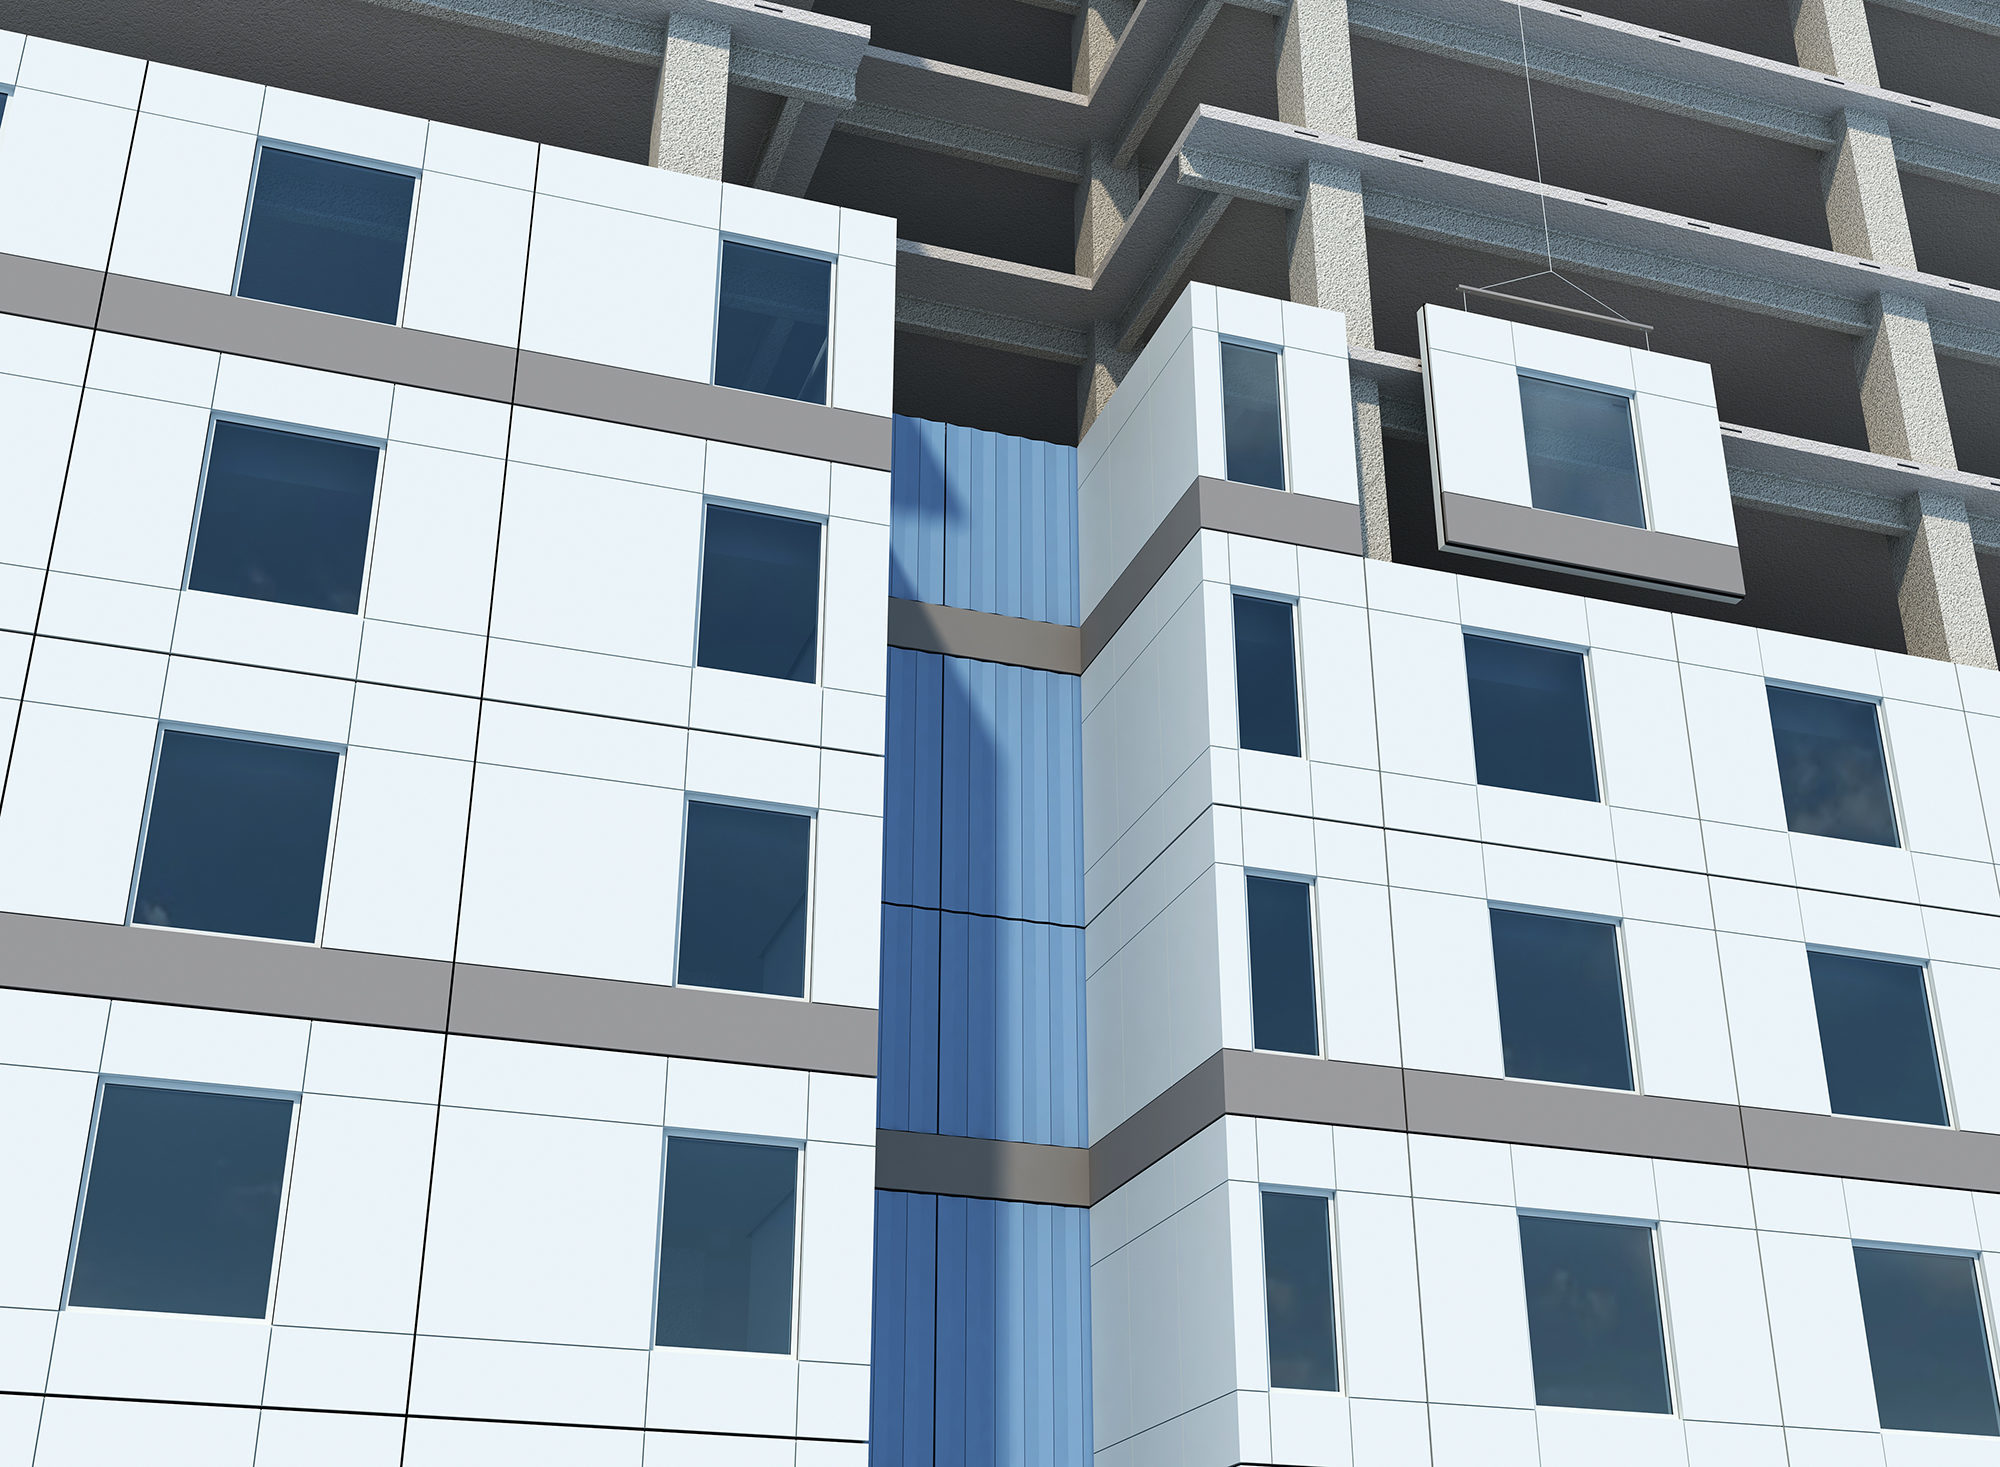 Systèmes et produits d'ingénierie pour la conception des bâtiments - Le système Onewall de MiTek est installé dans un bâtiment commercial à plusieurs étages.